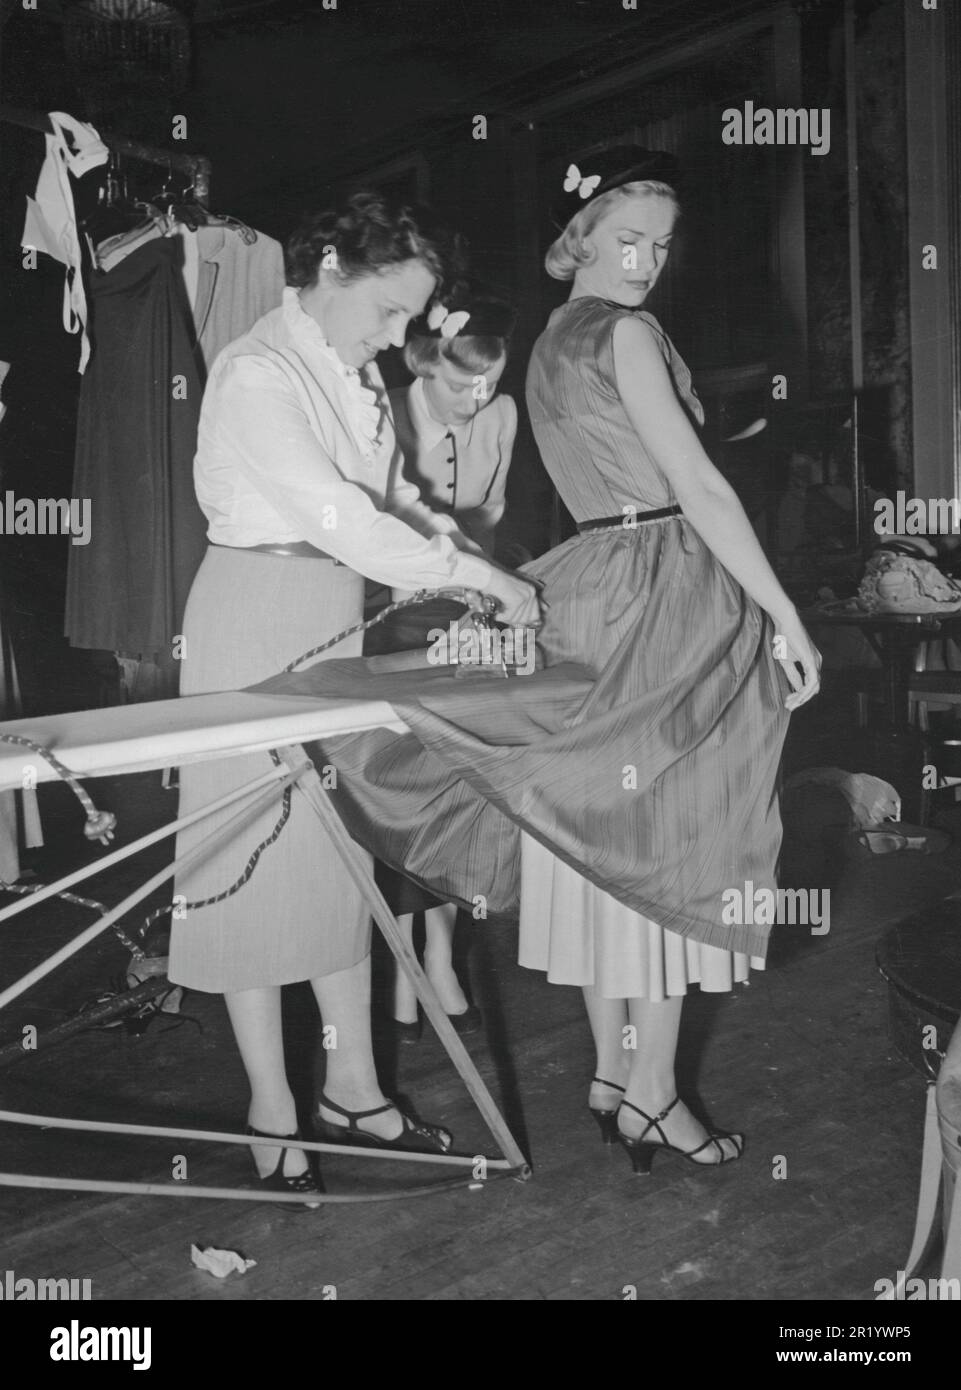 La mode des femmes en 1950s. La jeune mannequin est toujours debout pendant qu'un assistant reporte sa robe juste quelques instants avant que le modèle ne passe sur scène pour la montrer. C'est dans les détails bien sûr et une photo de l'arrière-plan. Suède 1951 Banque D'Images